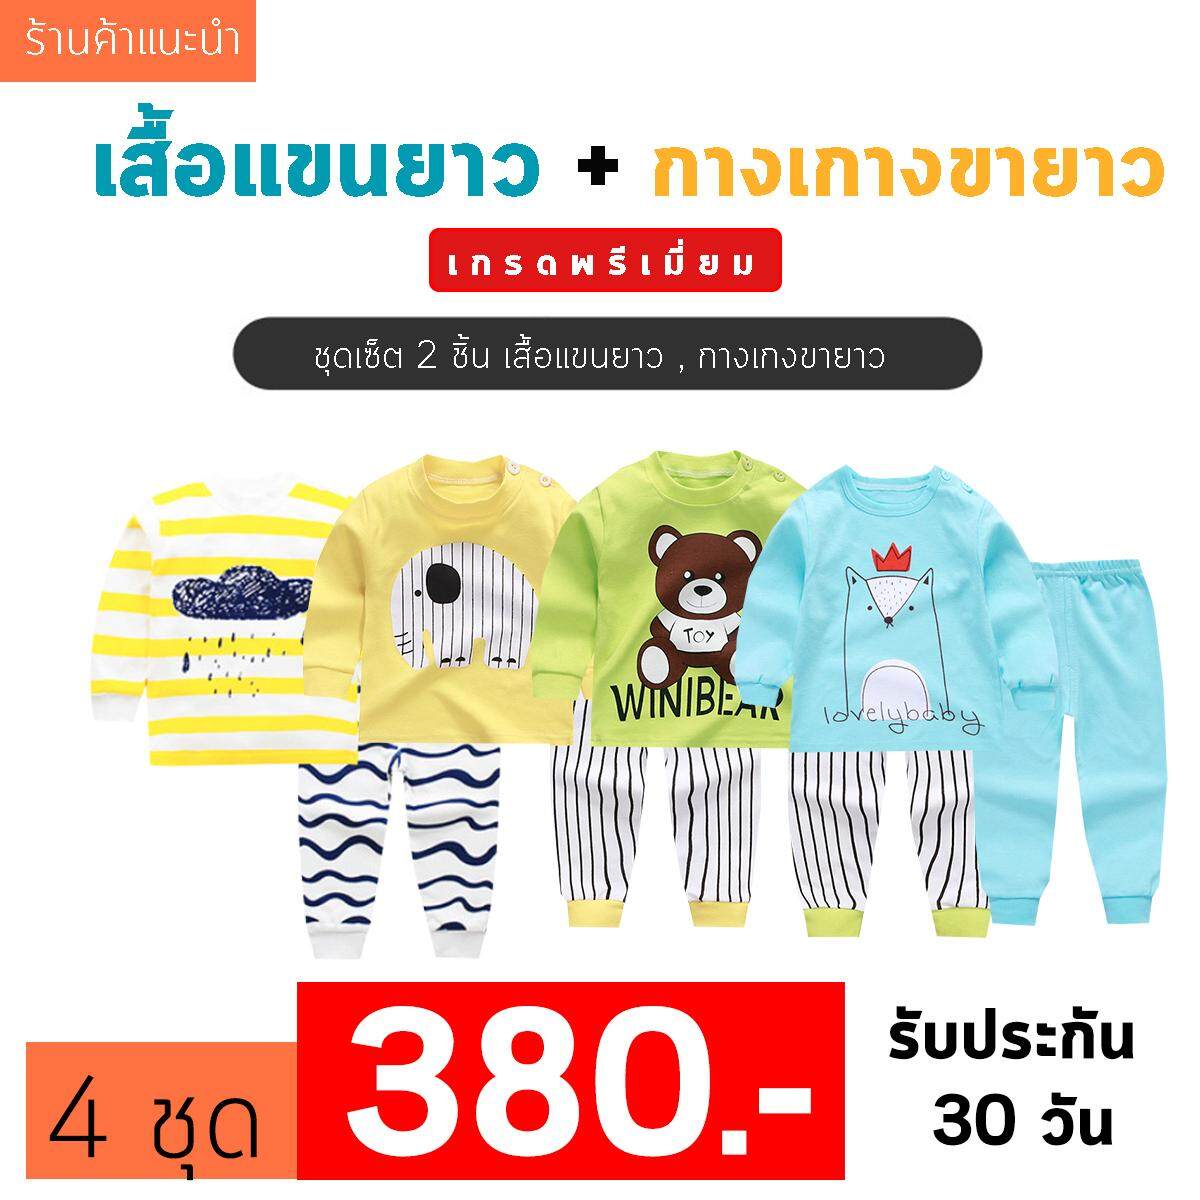 ❤️Baby Thailand ชุดเสื้อผ้าเด็ก ชุดนอน เด็ก ชุดเสื้อผ้าเด็ก ชุดนอน เด็ก [เซ็ต2ชิ้น] [ เสื้อแขนยาว + กางเกงขายาว ]ใส่สบายเนื้อผ้า Cotton ราคาพิเศษ ไซส์ 80 -120cm/ 6เดือน-5ปี ชุดนอนเด็ก ผ้านิ่ม เนื้อผ้า